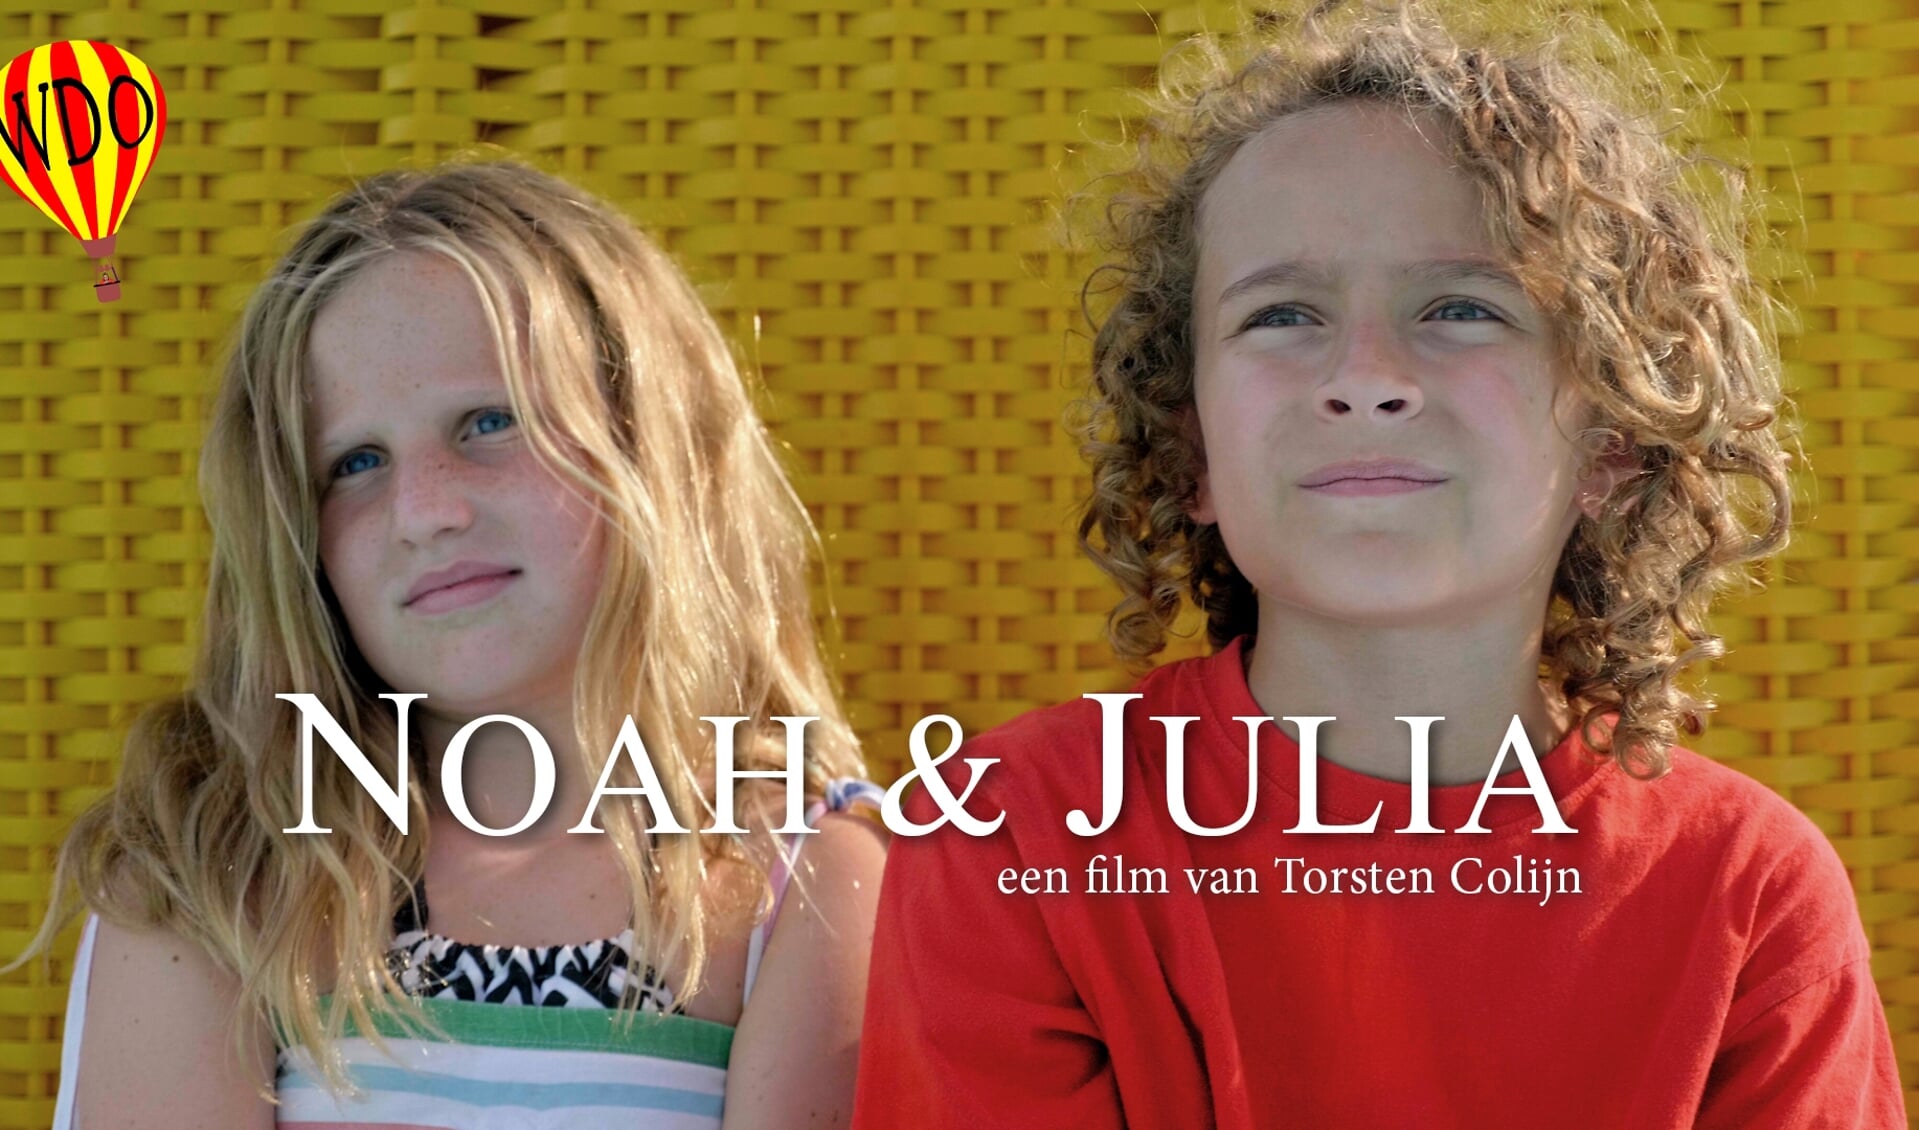 Suzanne van Ginkel (links) en Finn Prazsky (rechts) spelen de hoofdrollen in de film 'Noah & Julia'.